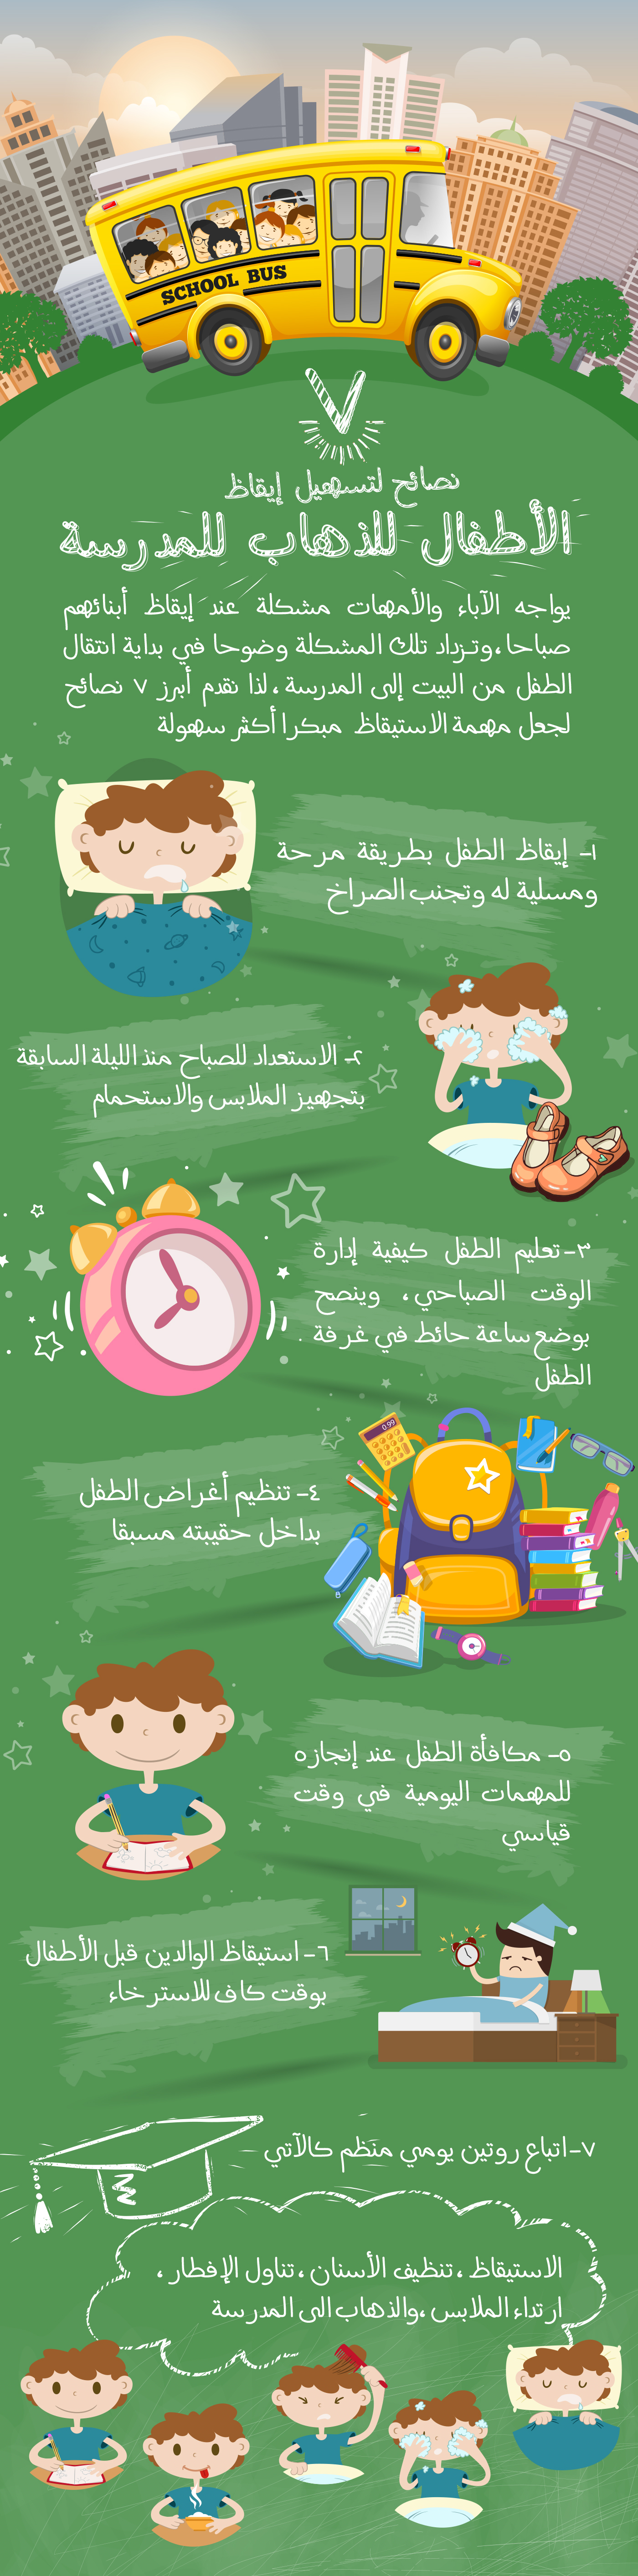 free arabic dwonload infographic  school kids learn